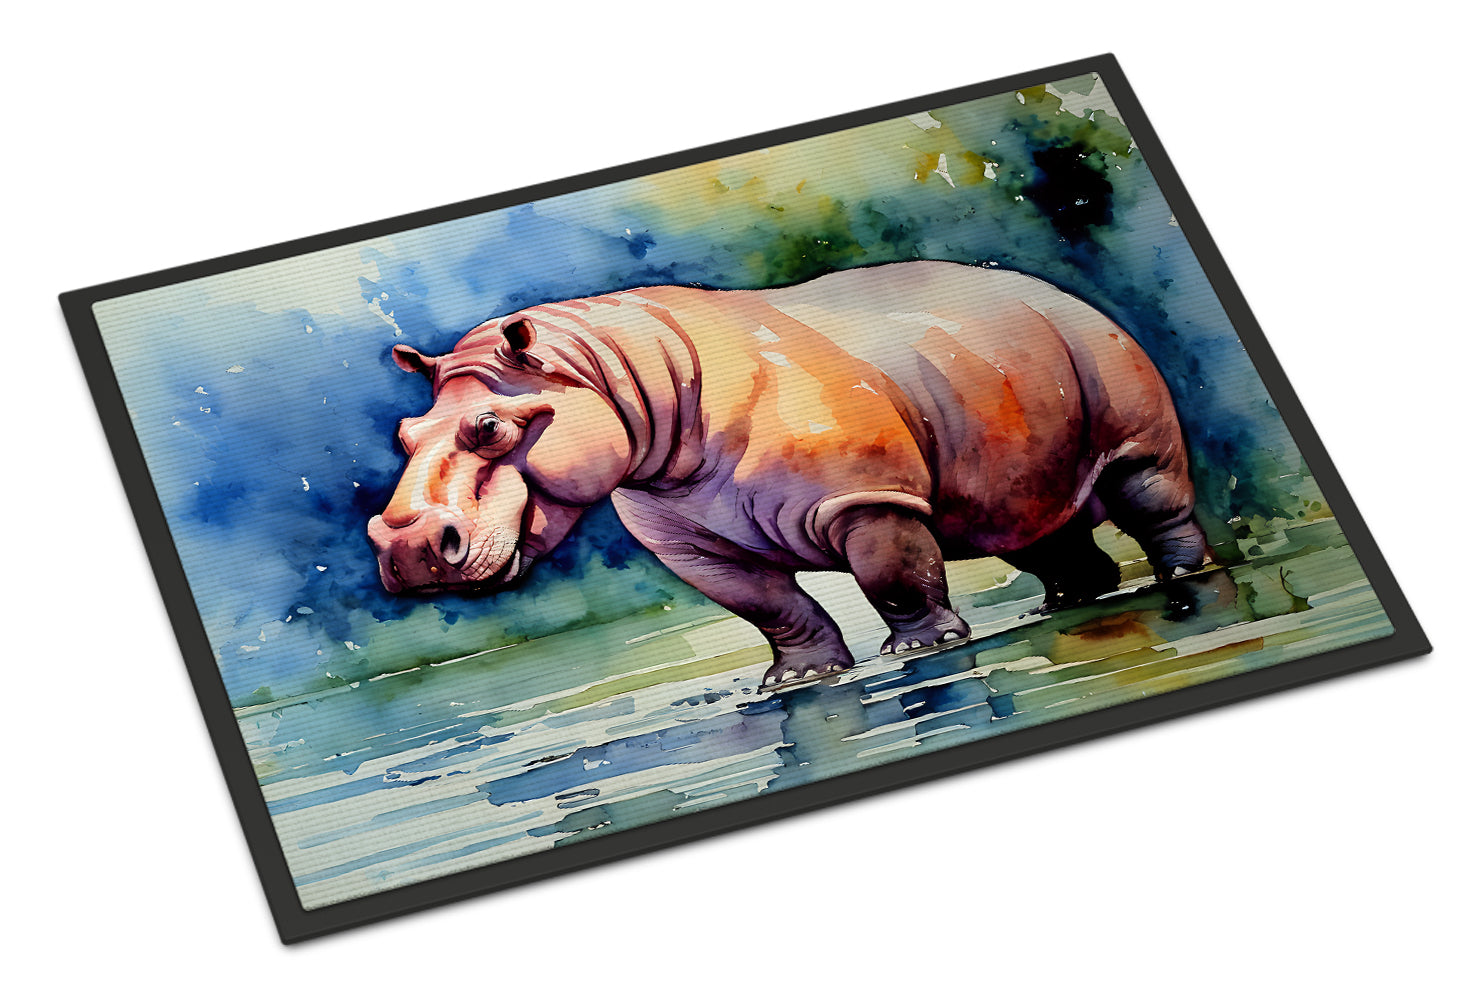 Buy this Hippopotamus Doormat